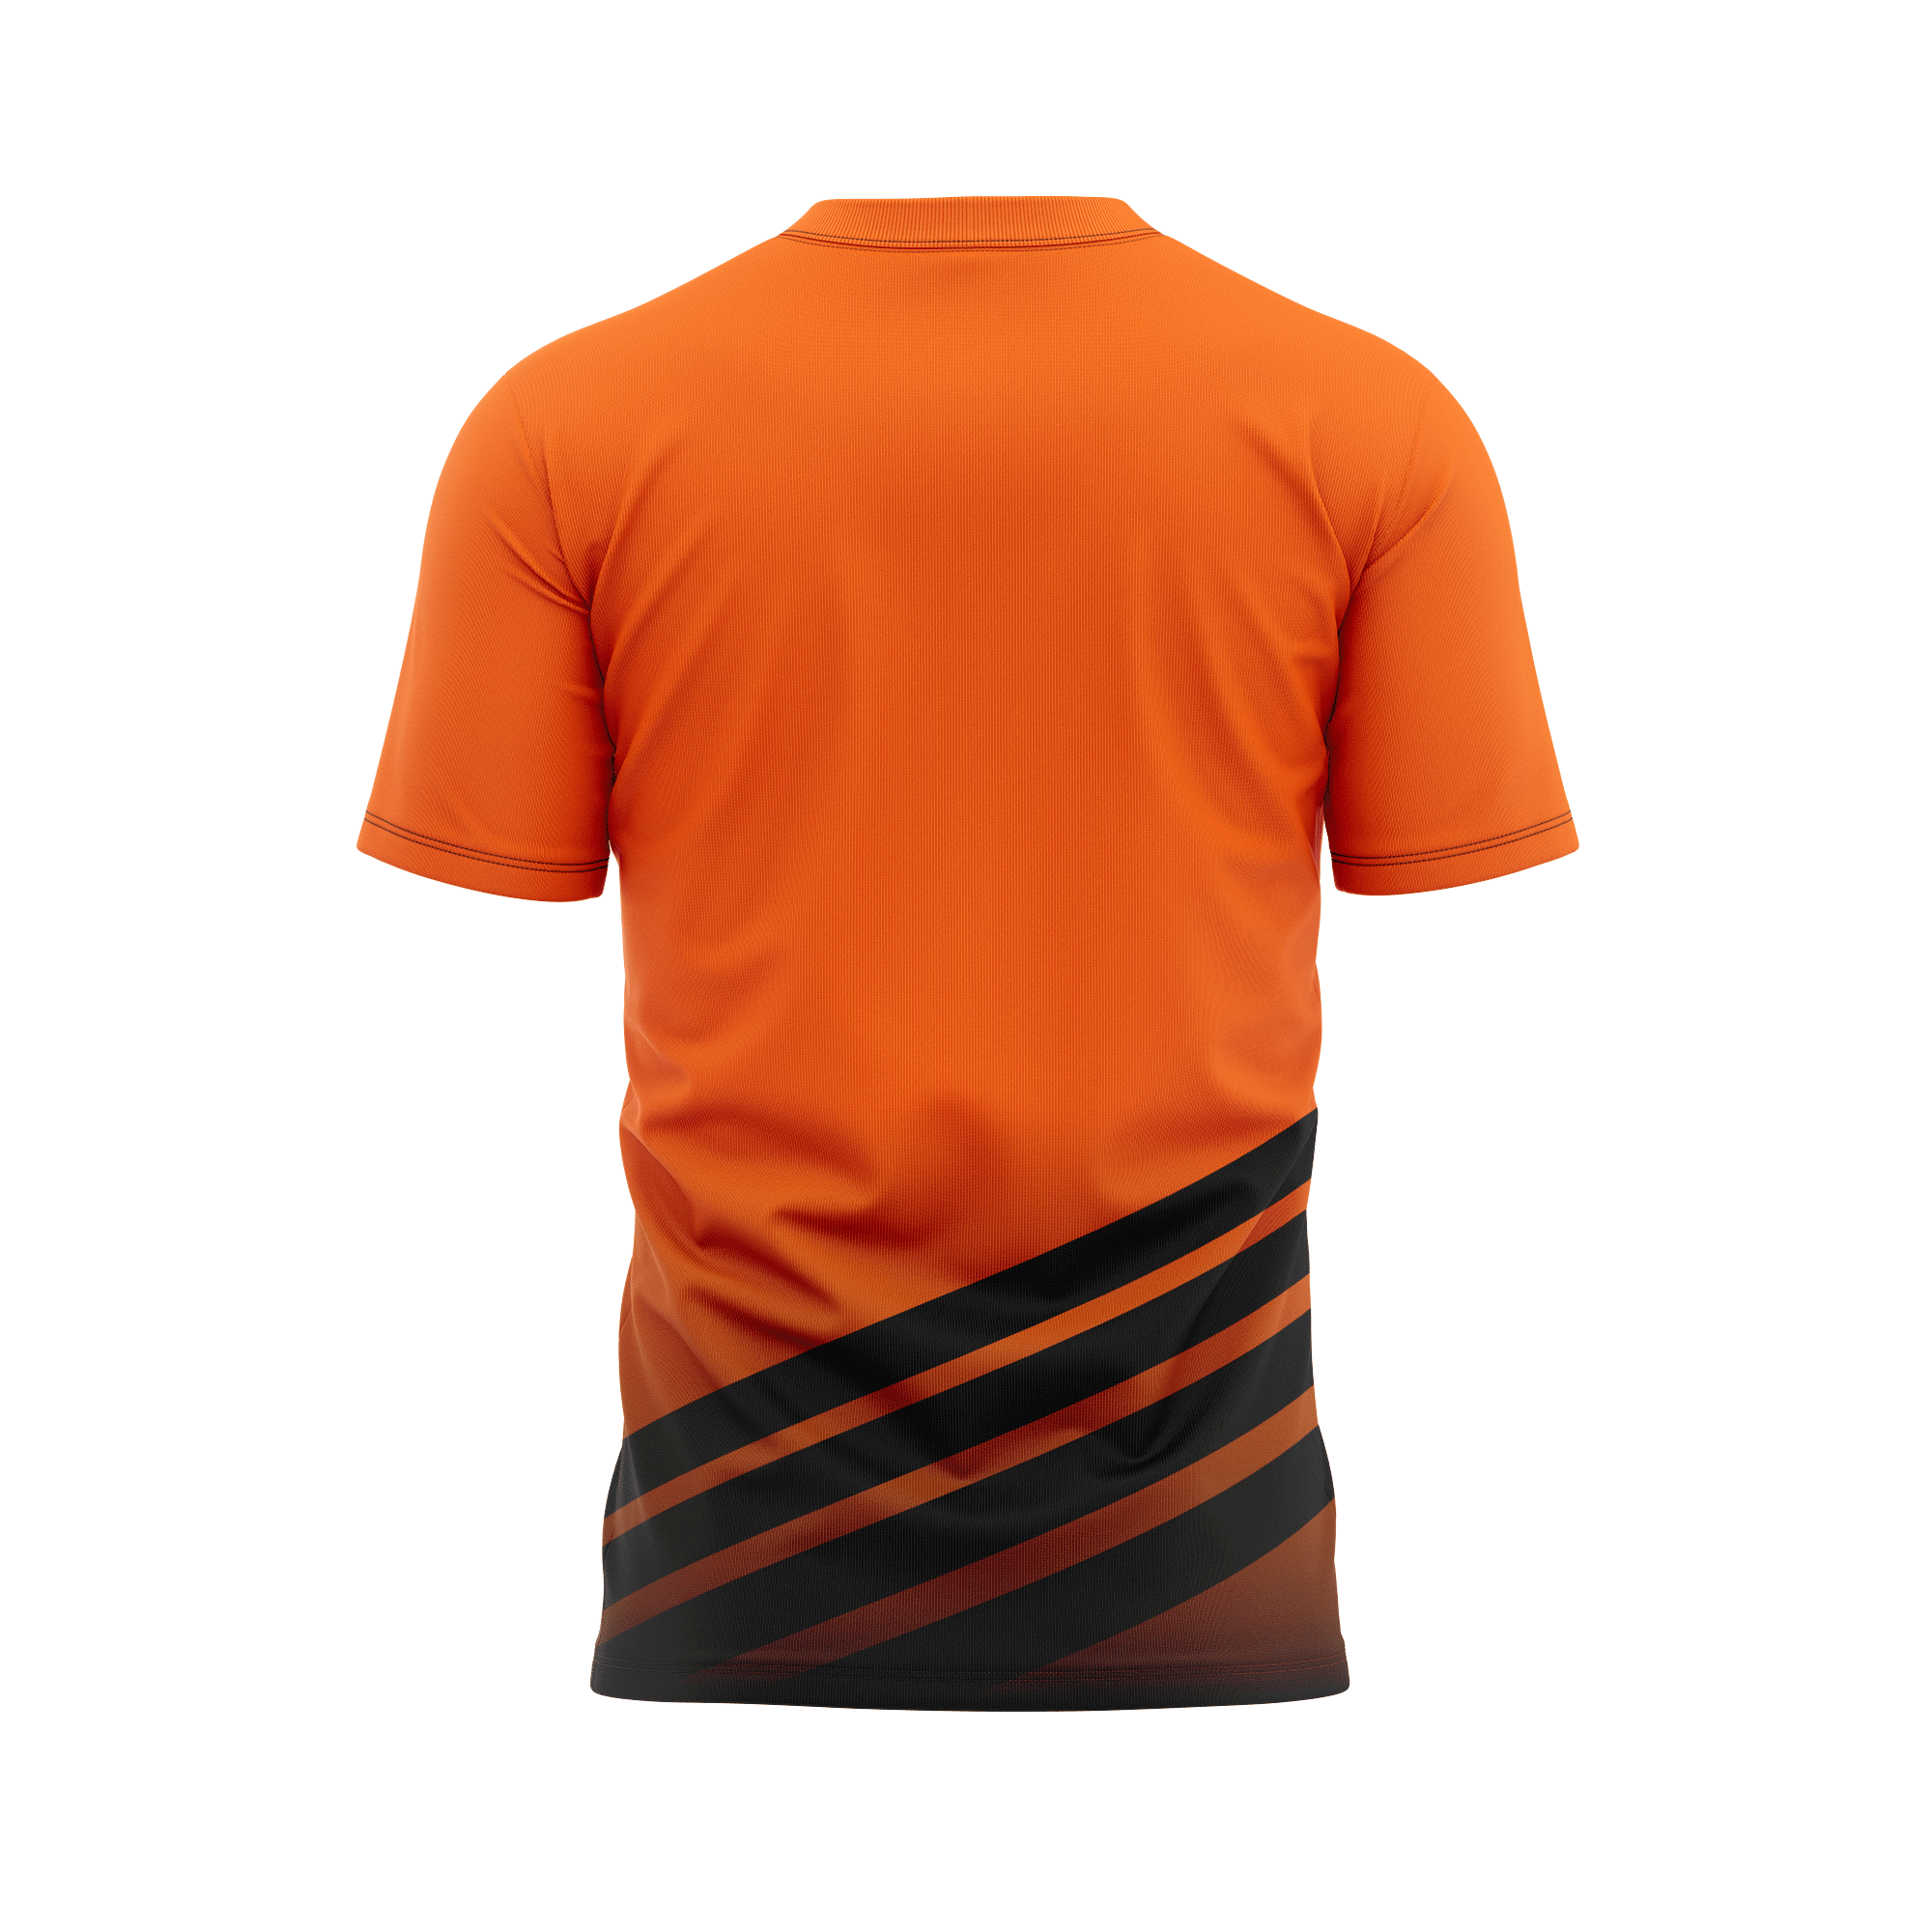 Rezista Customized Jersey - Sub Design-Orange-8 | Customized T-shirts ...